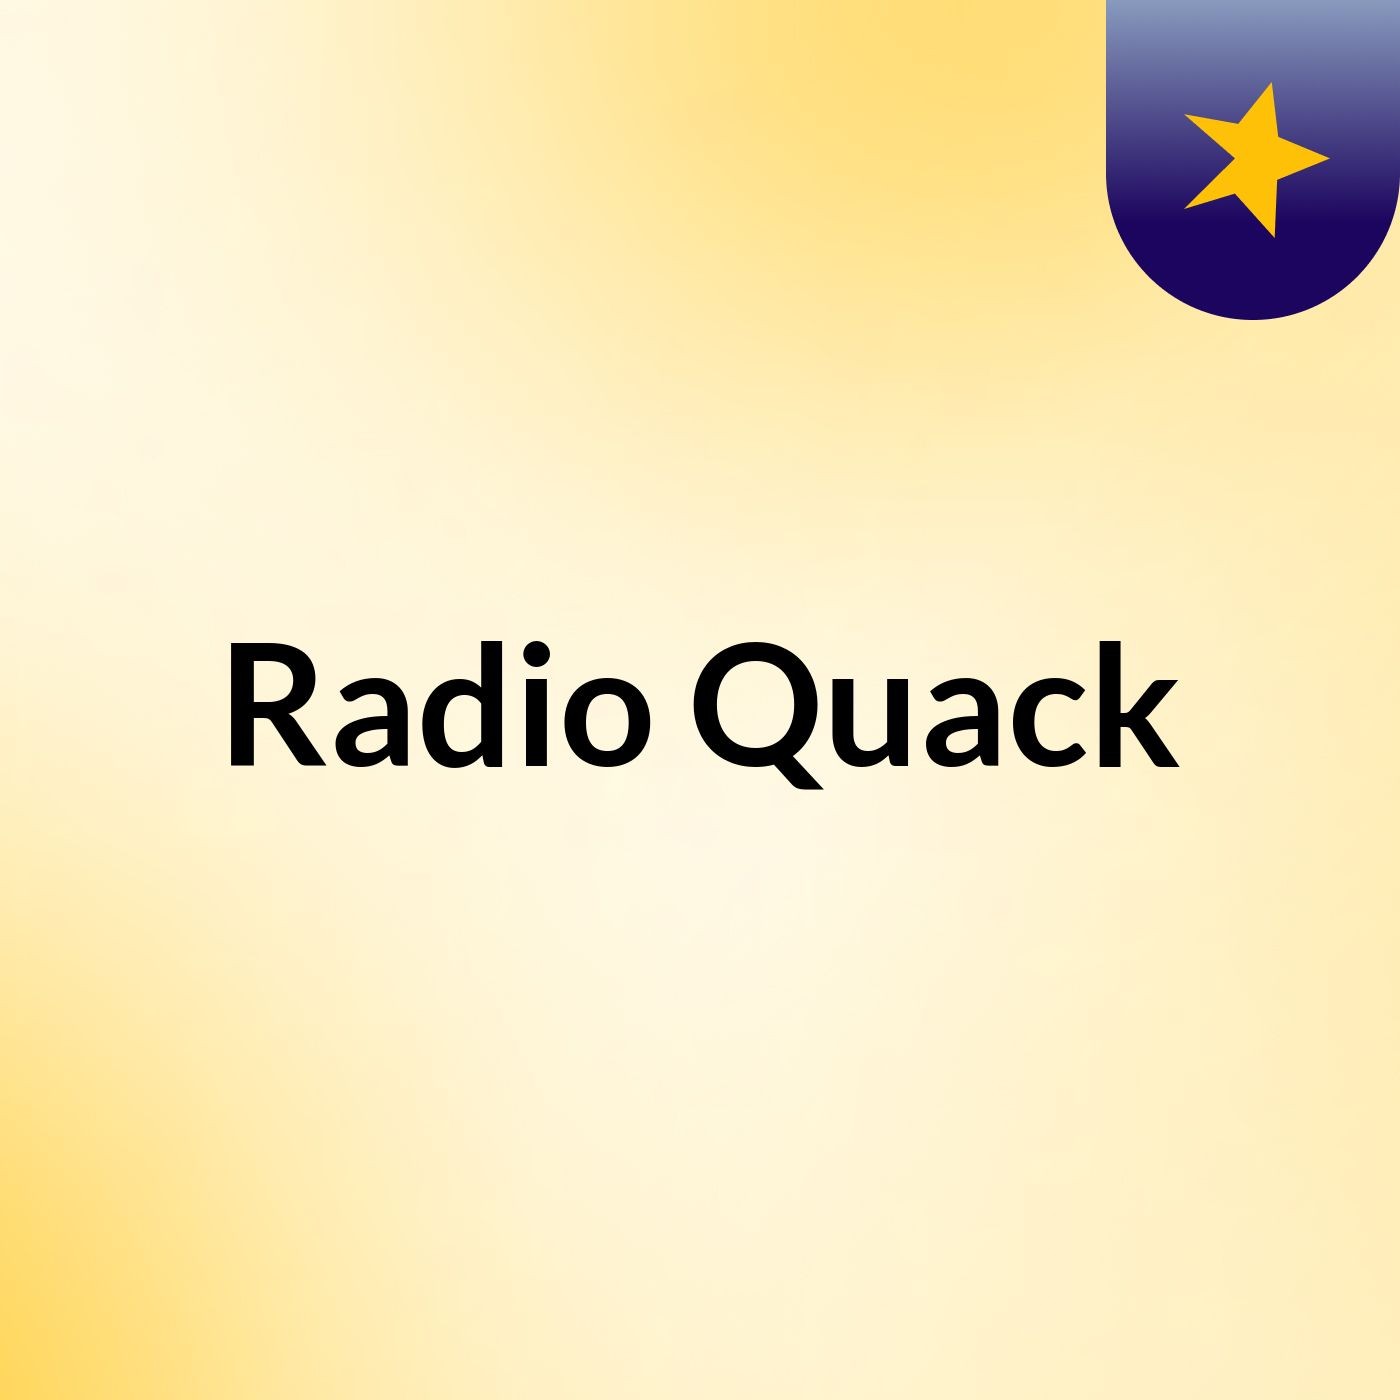 Radio Quack